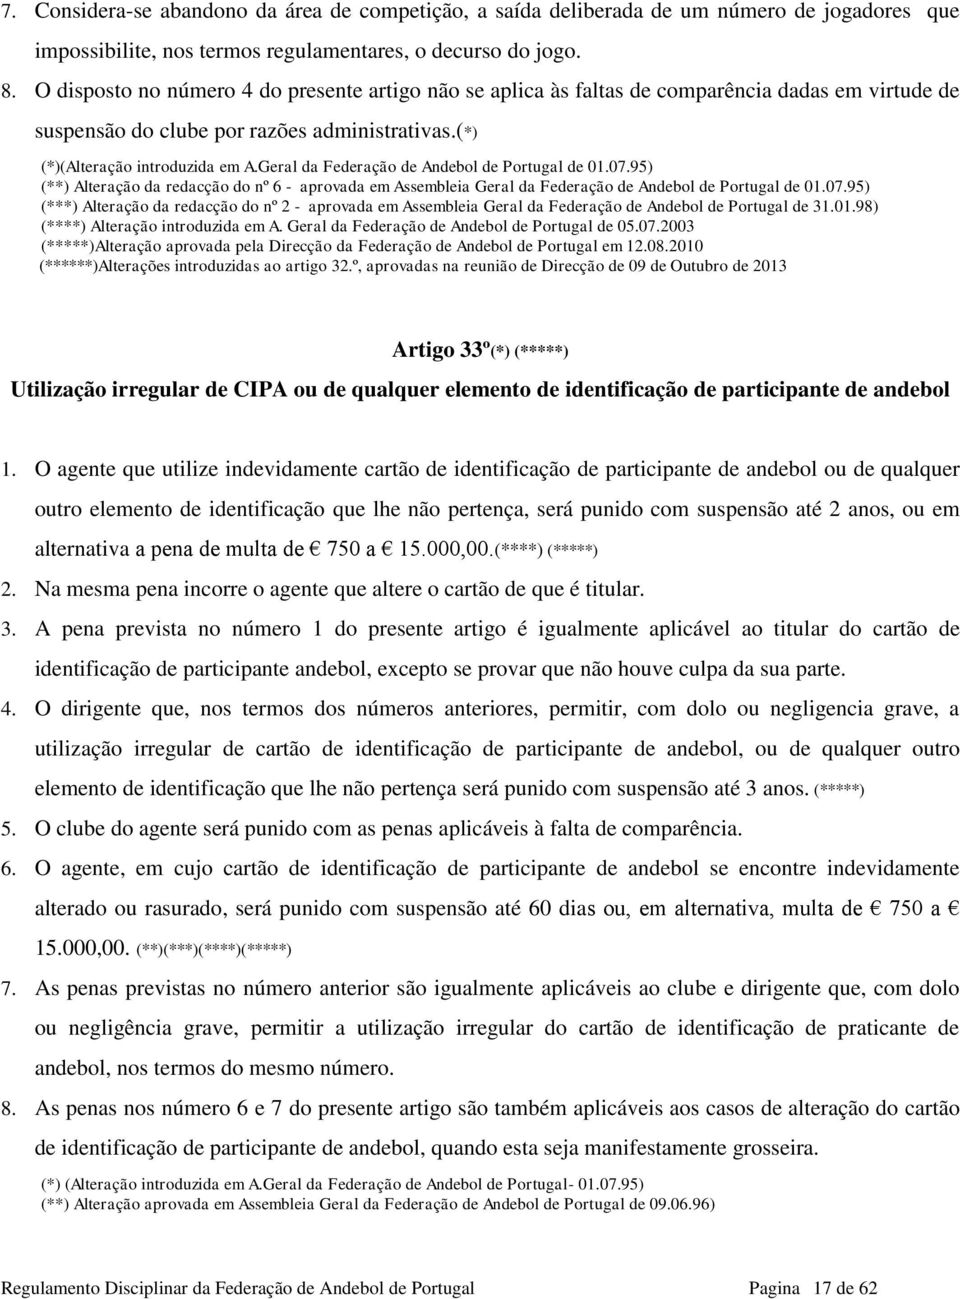 Geral da Federação de Andebol de Portugal de 01.07.95) (**) Alteração da redacção do nº 6 - aprovada em Assembleia Geral da Federação de Andebol de Portugal de 01.07.95) (***) Alteração da redacção do nº 2 - aprovada em Assembleia Geral da Federação de Andebol de Portugal de 31.